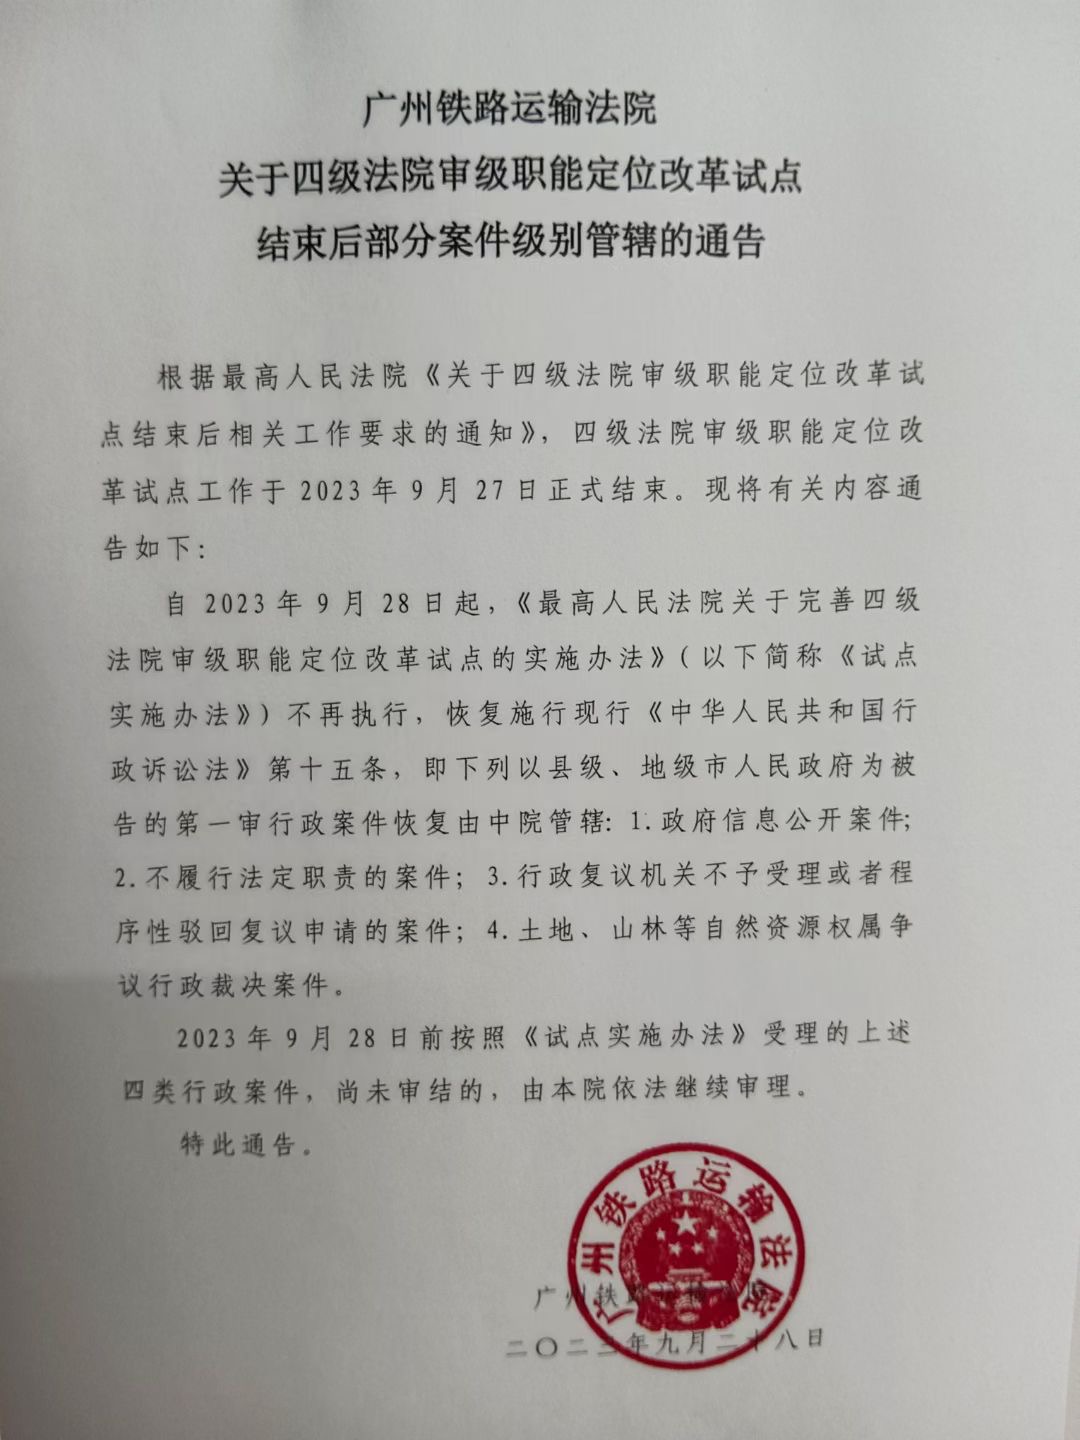 广州铁路运输法院关于四级法院审级职能定位改革试点结束后部分案件级别管辖的通告